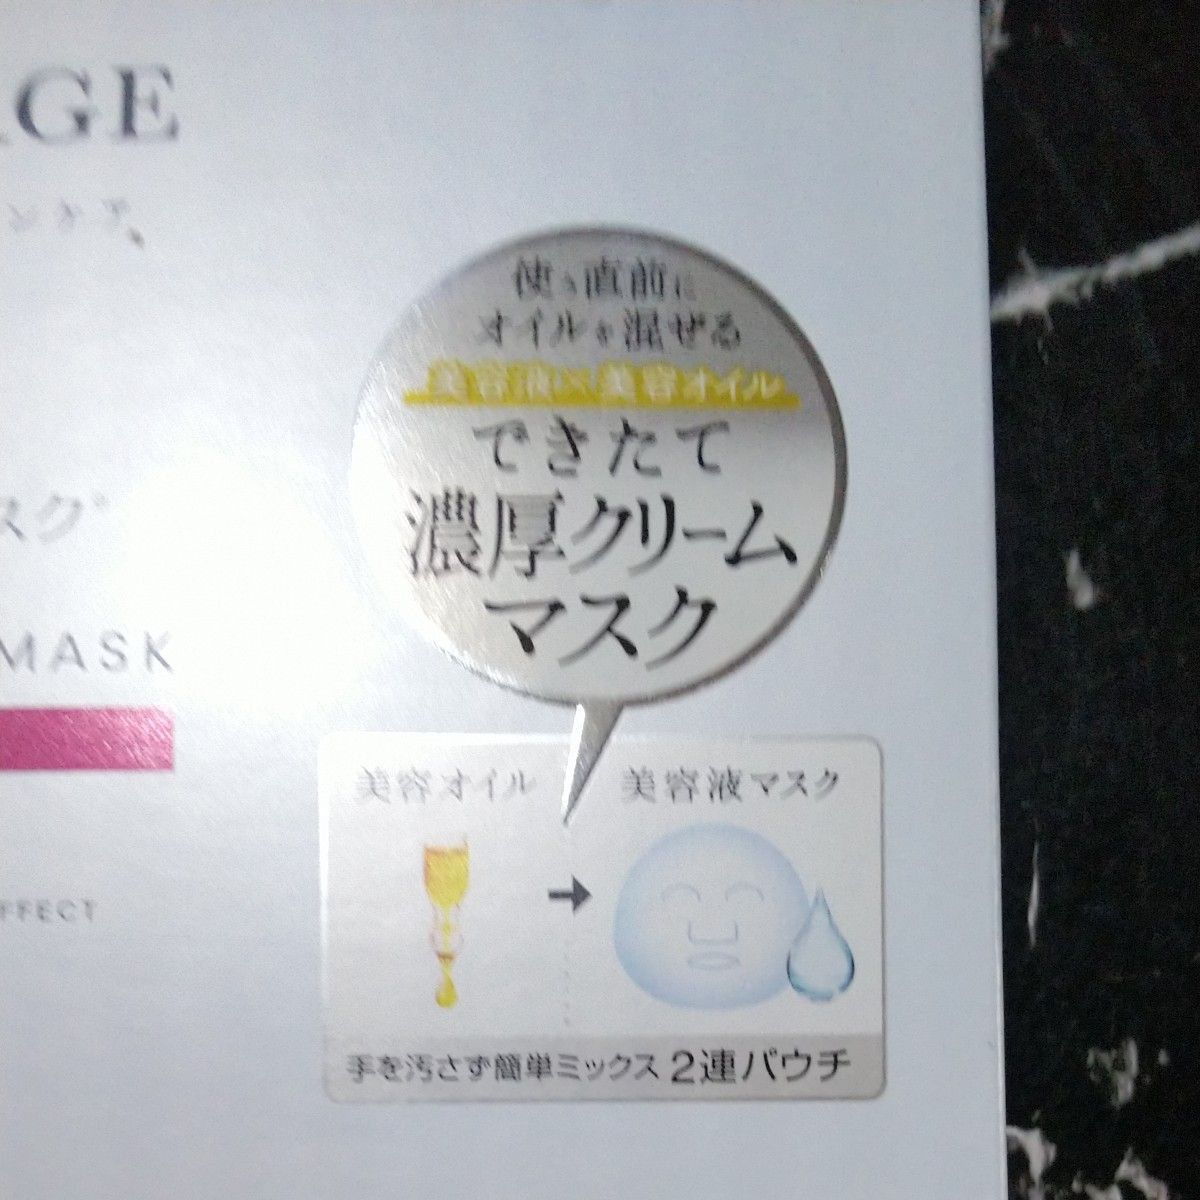 デルマサージ KOSE ハイドロニスト フェイスマスク (ディープモイスト) 3回分 オイル×美容液のデュアルマスク